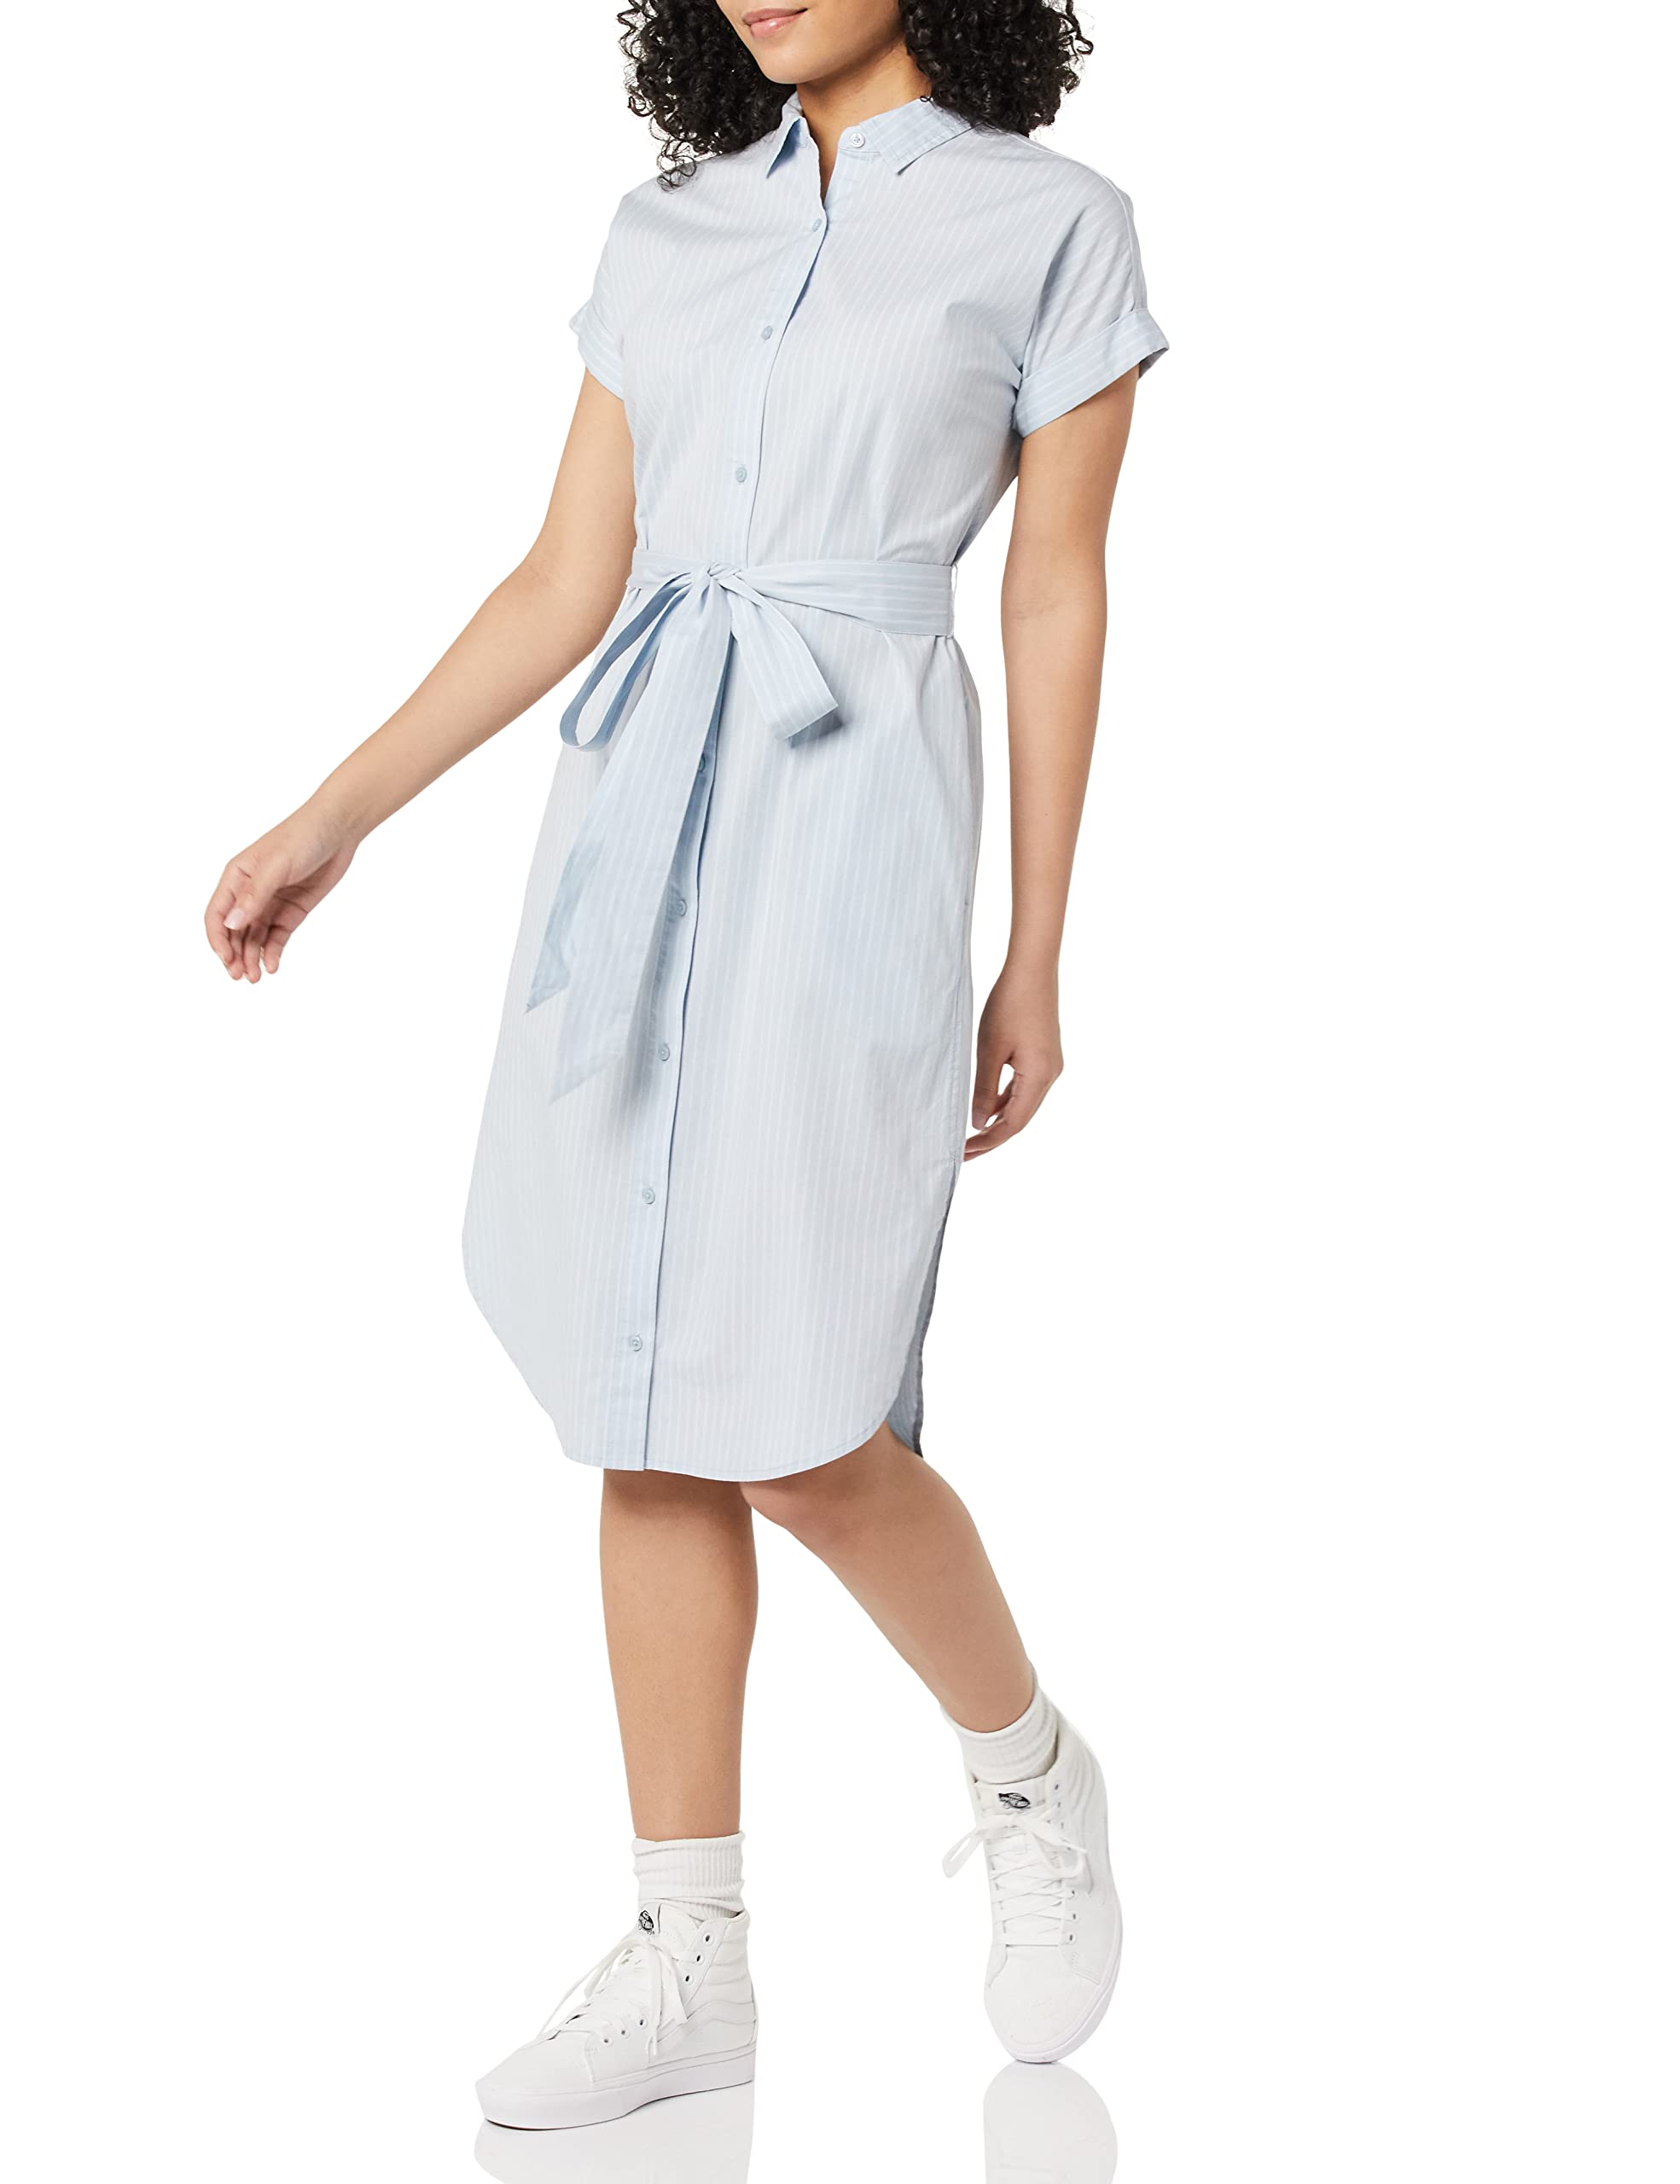 Amazon Essentials Women's Short Sleeve Button Front Belted Shirt Dress